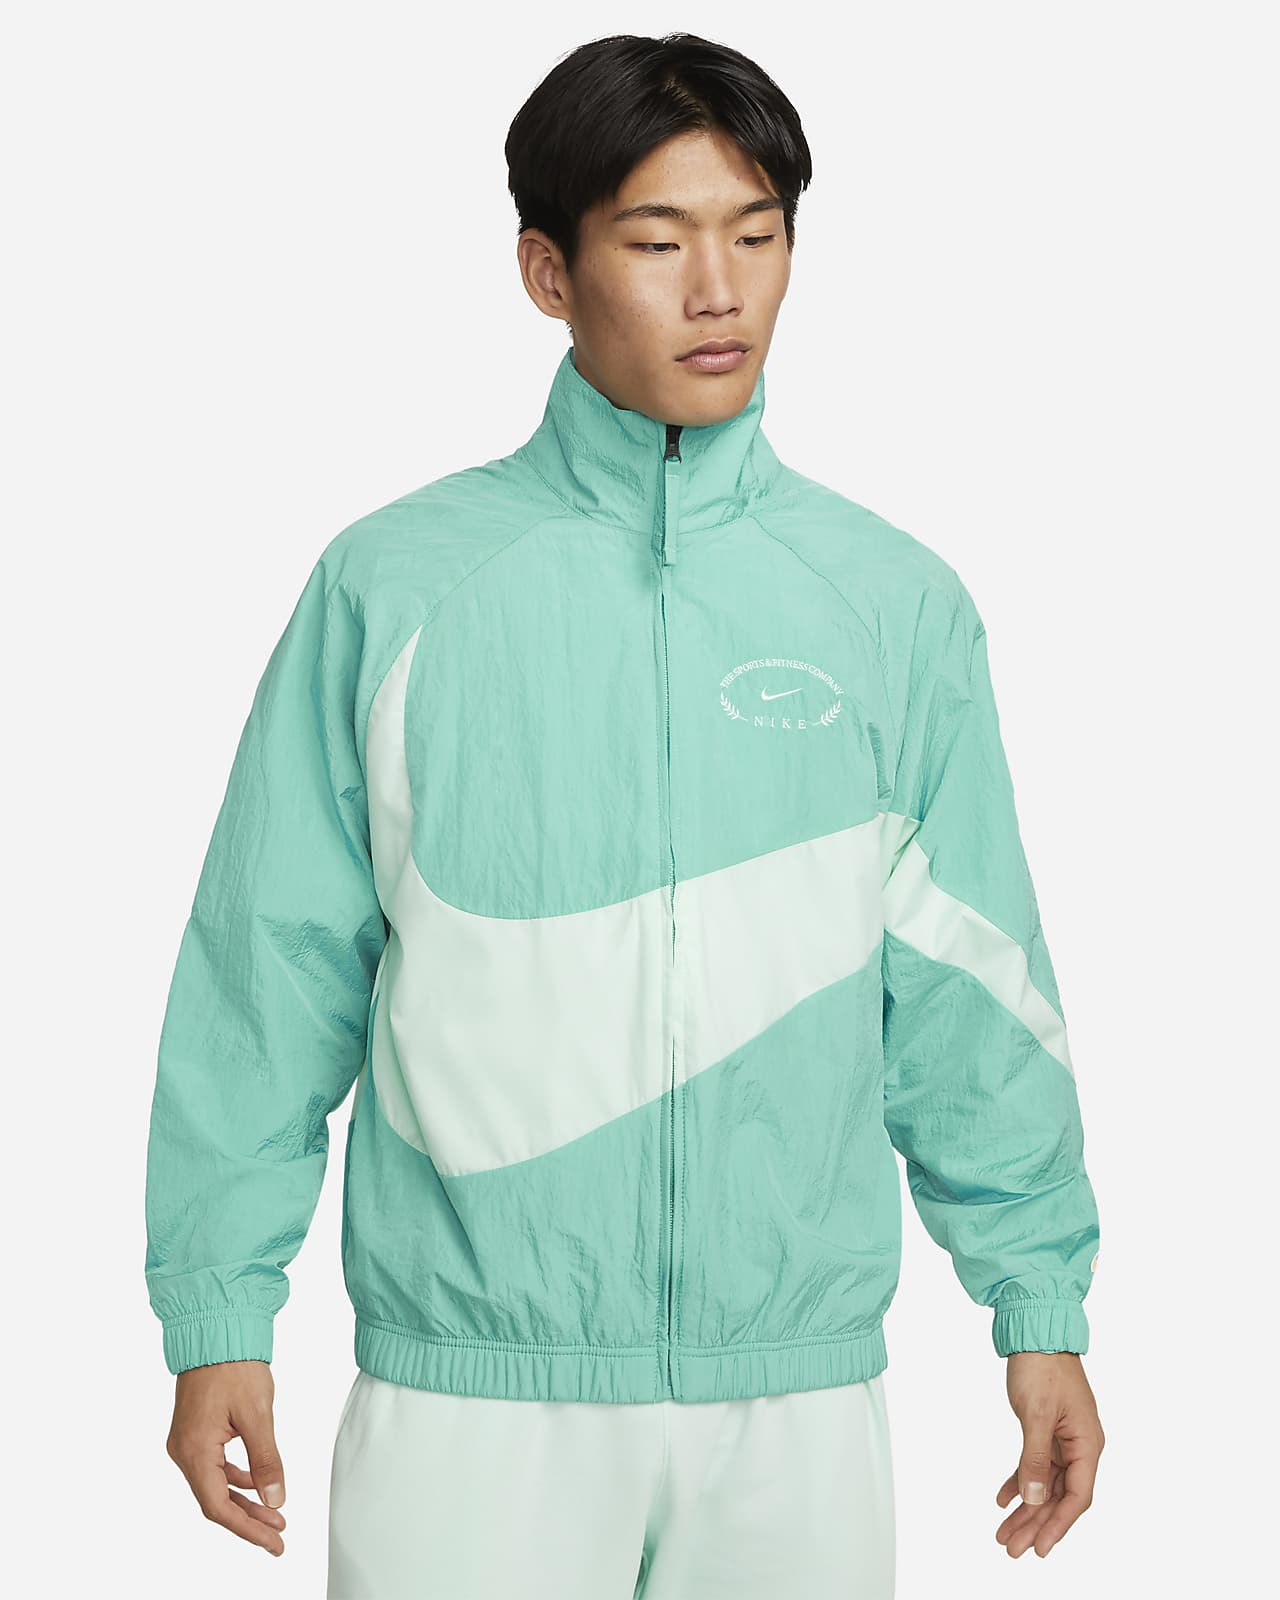 Nike Sportswear Men's Woven Jacket